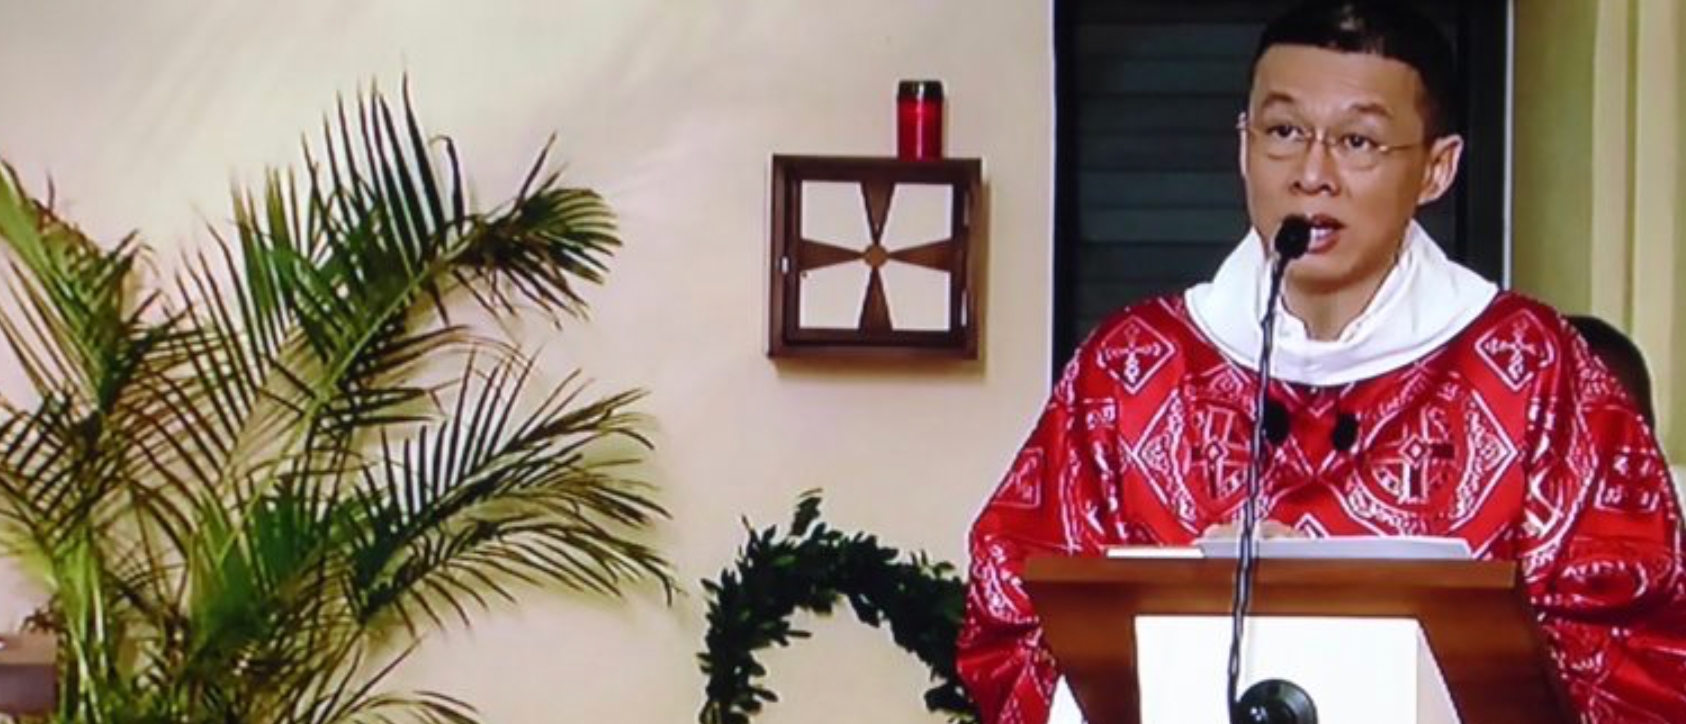 Mgr Pascal Chane-Teng est le nouvel évêque de St-Denis de La Réunion | © Site Sedifop